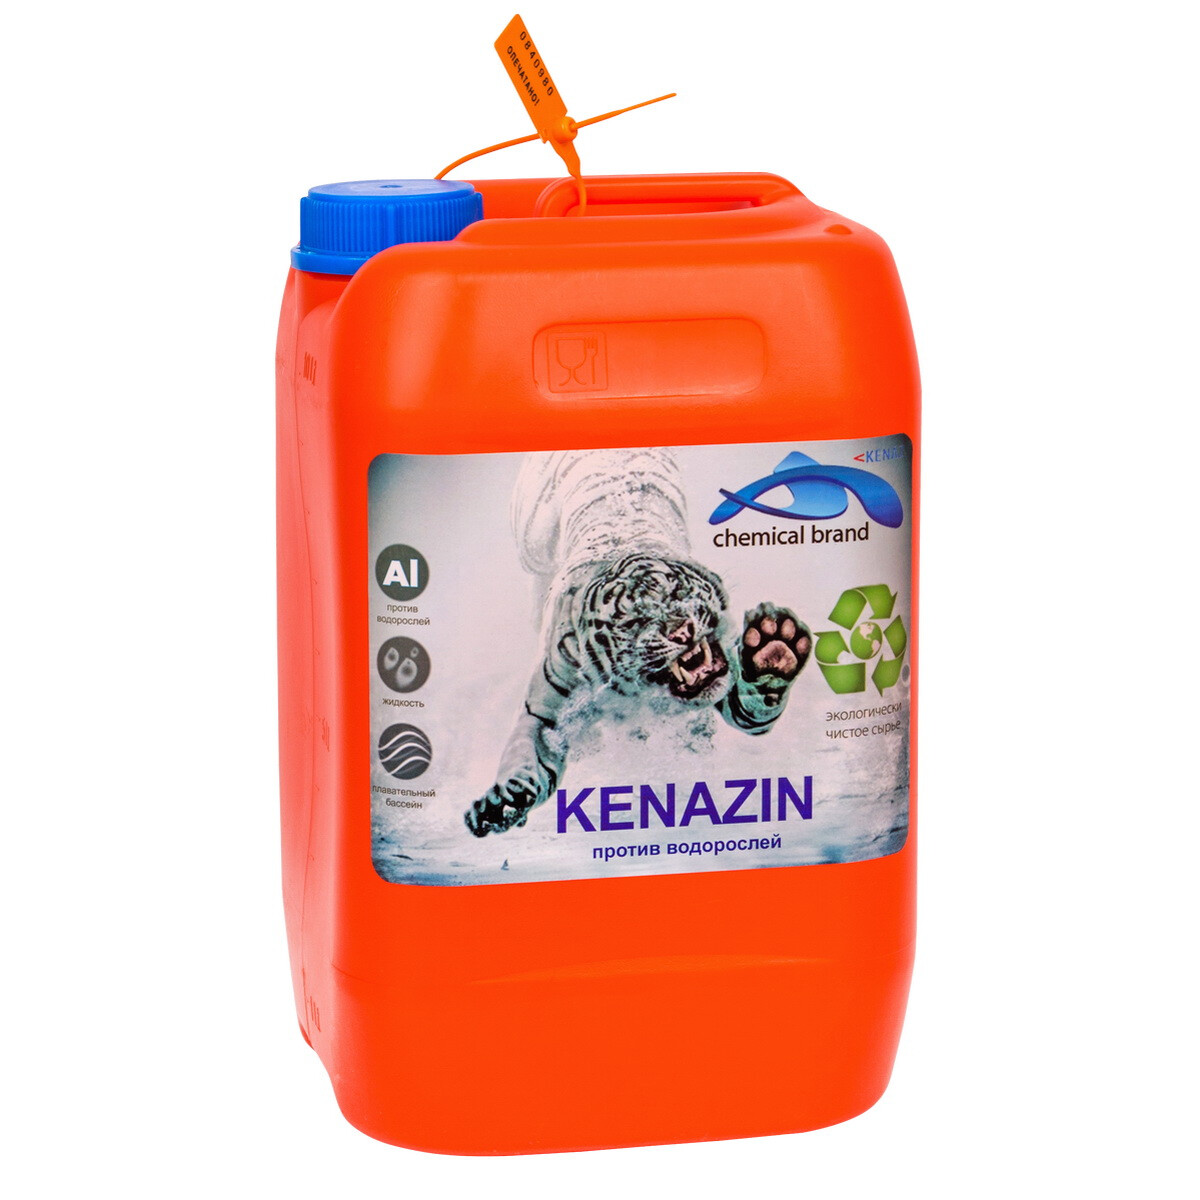 Жидкое средство для удаления плесени и водорослей Kenaz Kenazin непенящийся